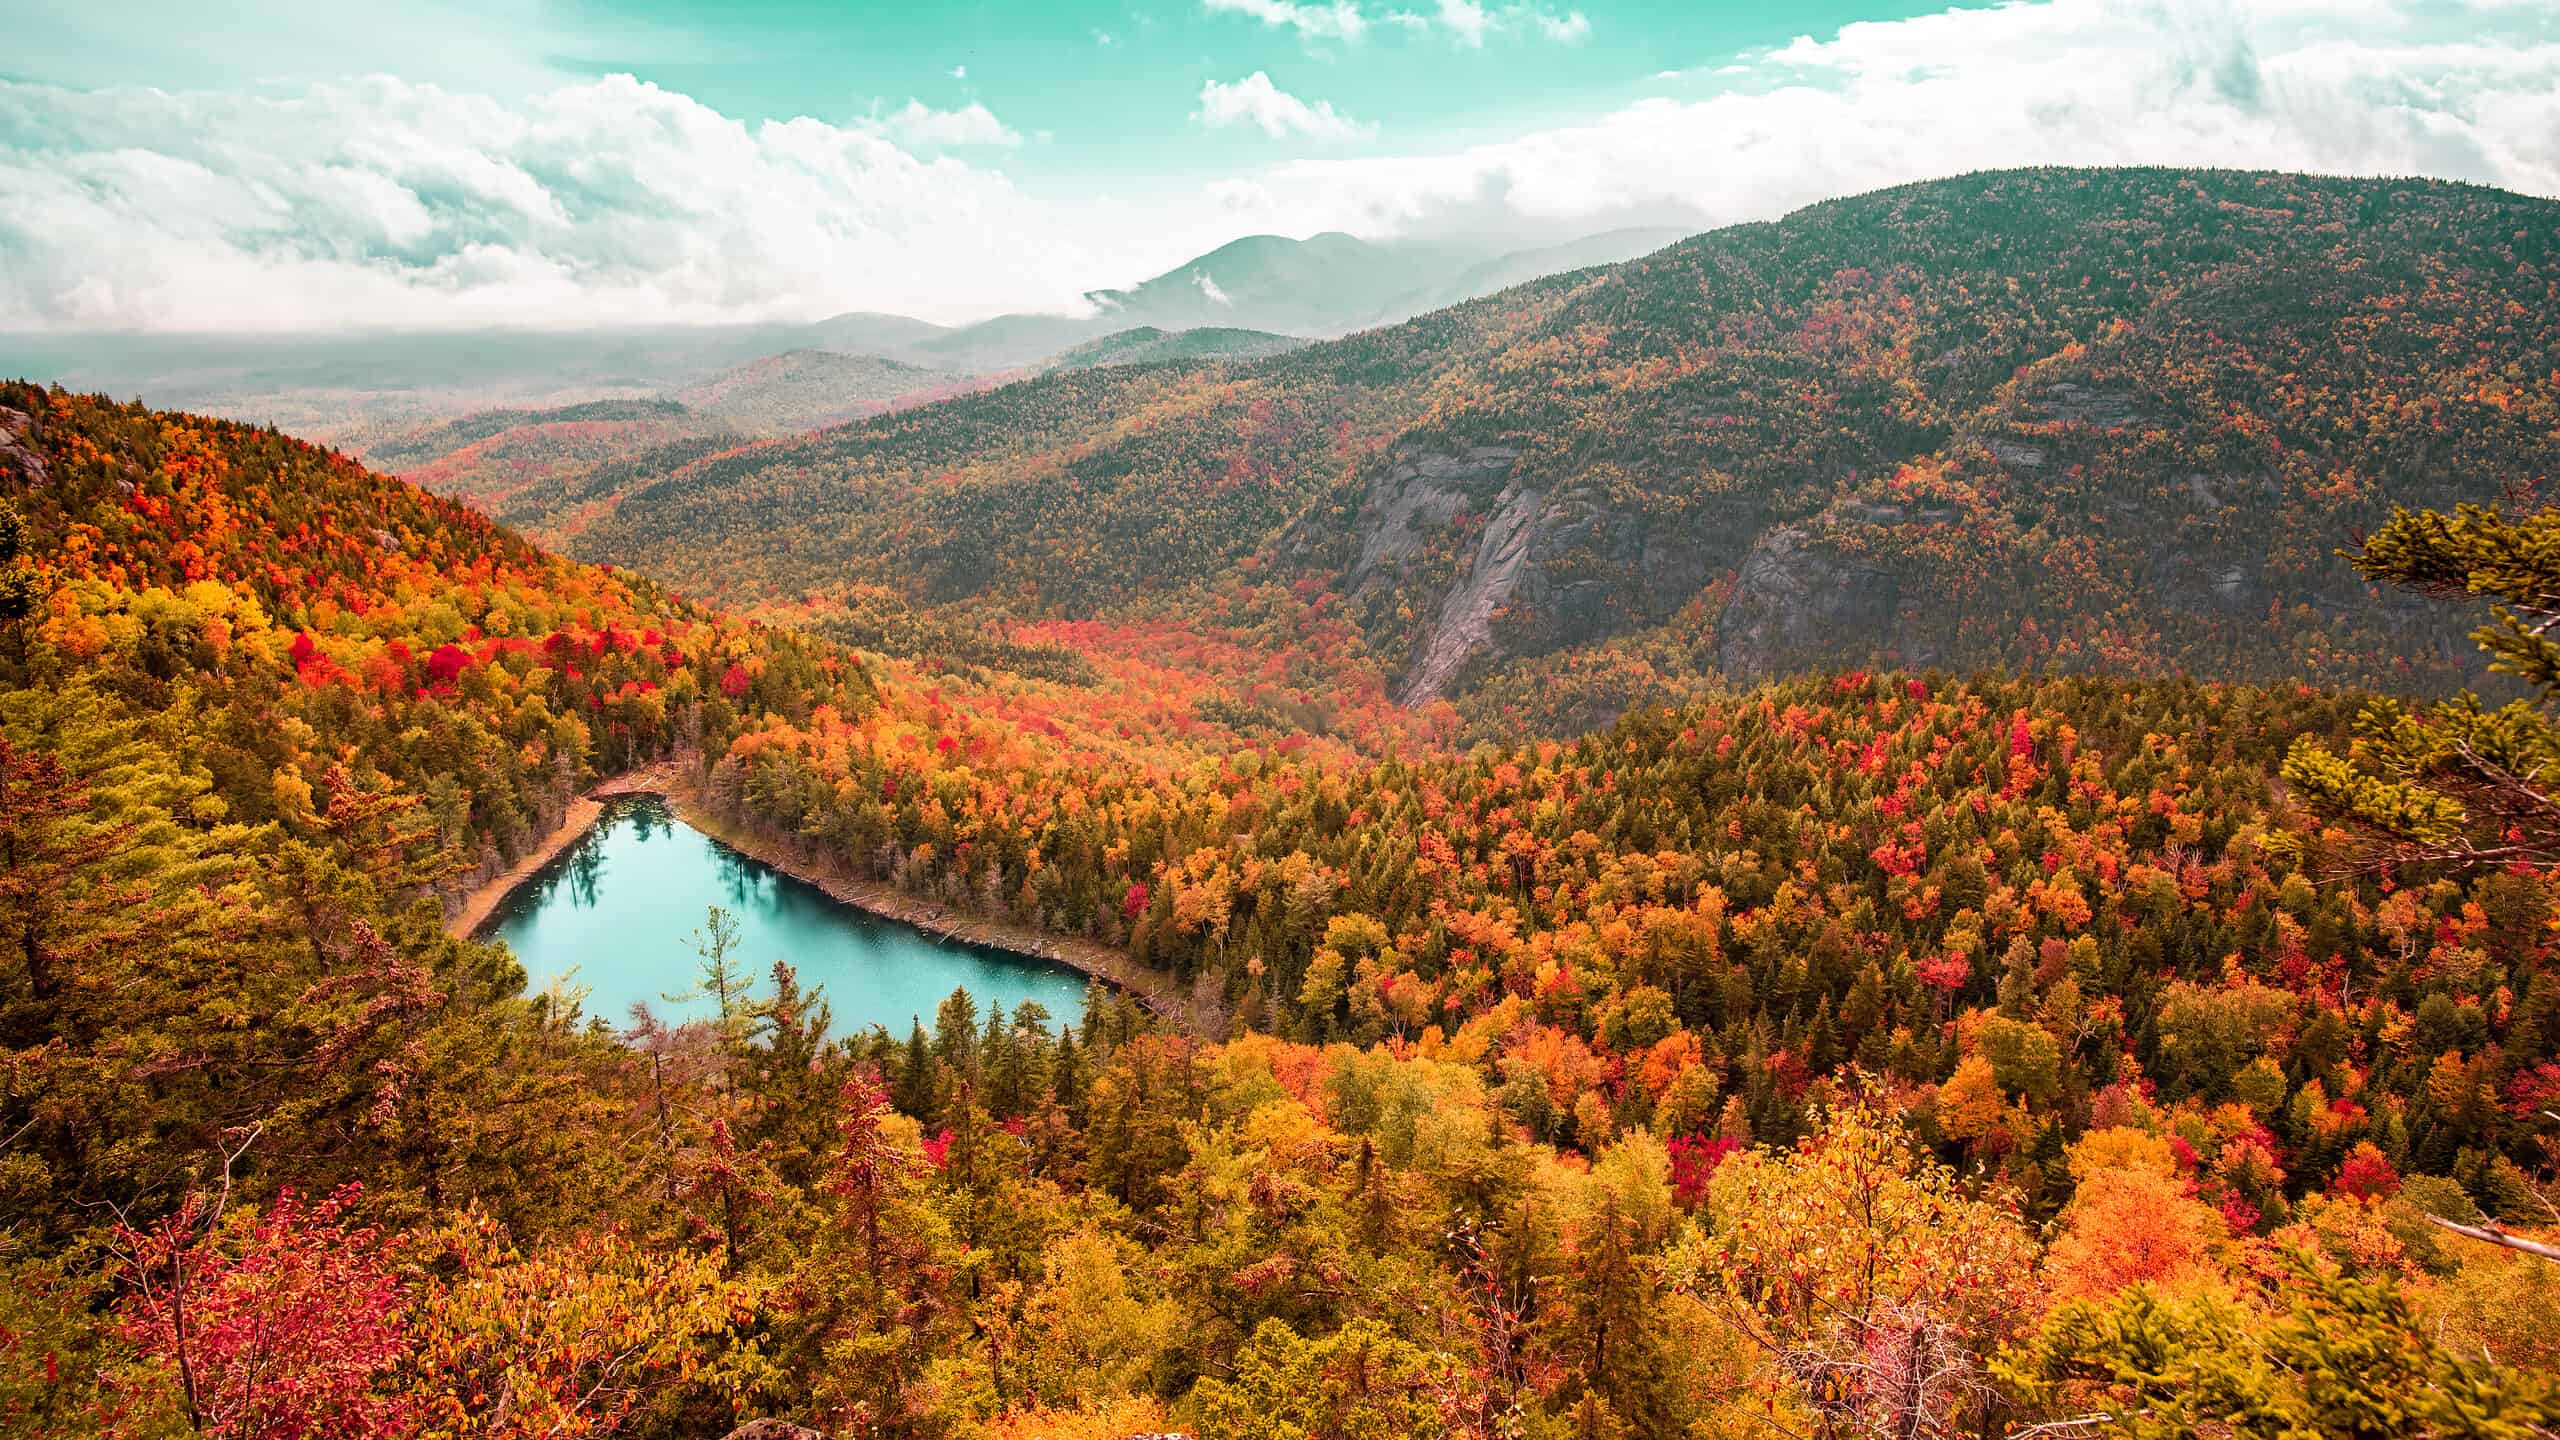 The Adirondacks in Fall.